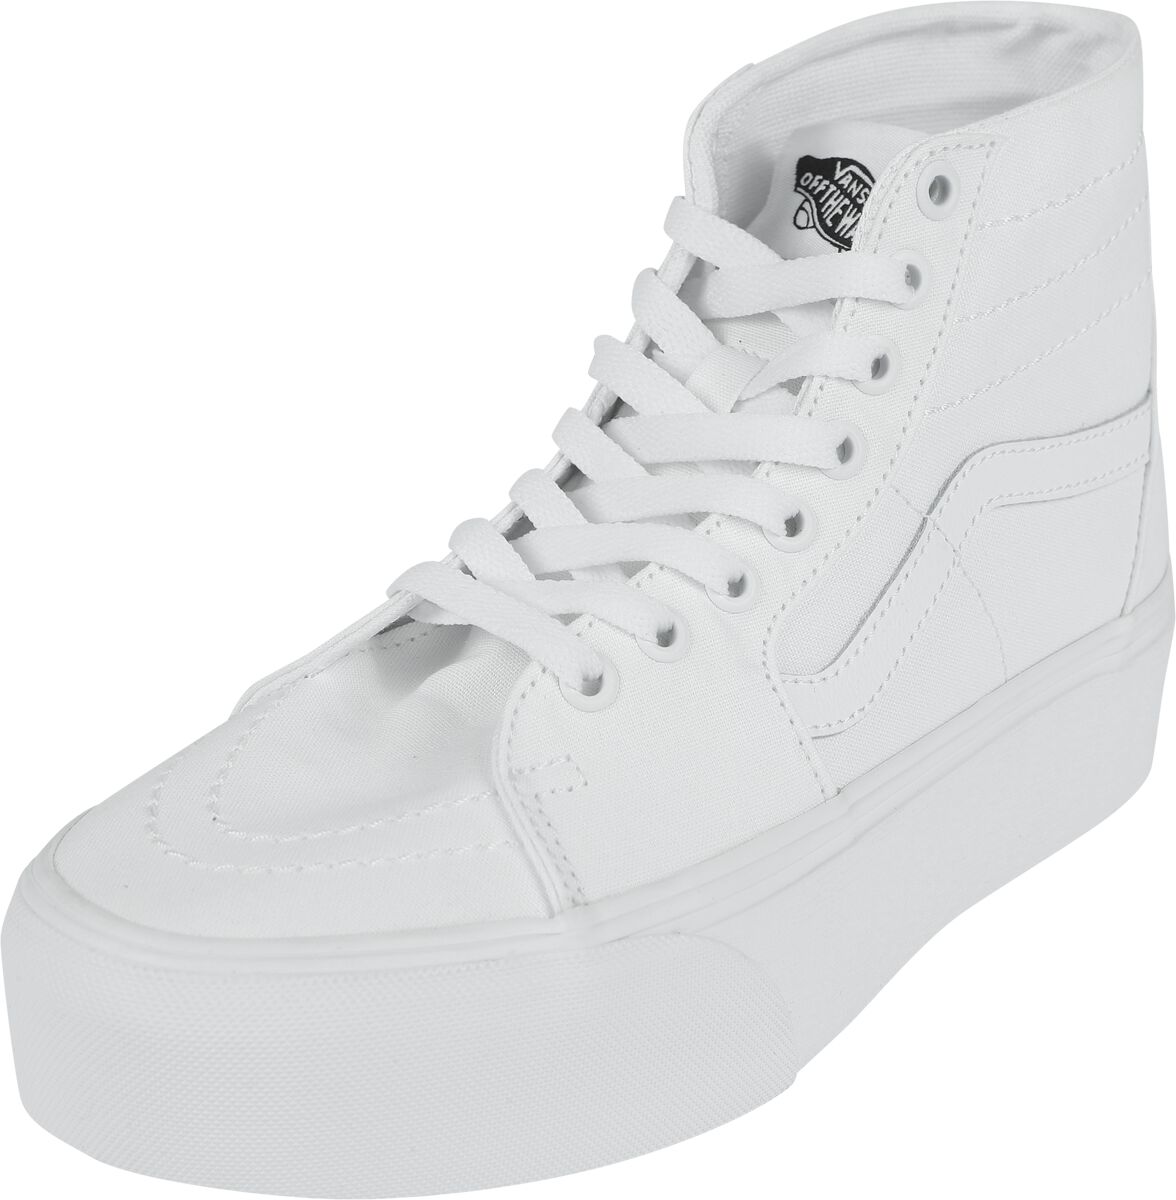 Vans Sneaker high - SK8-Hi Tapered Stackform Canvas True White - EU37 bis EU41 - für Damen - Größe EU40 - weiß